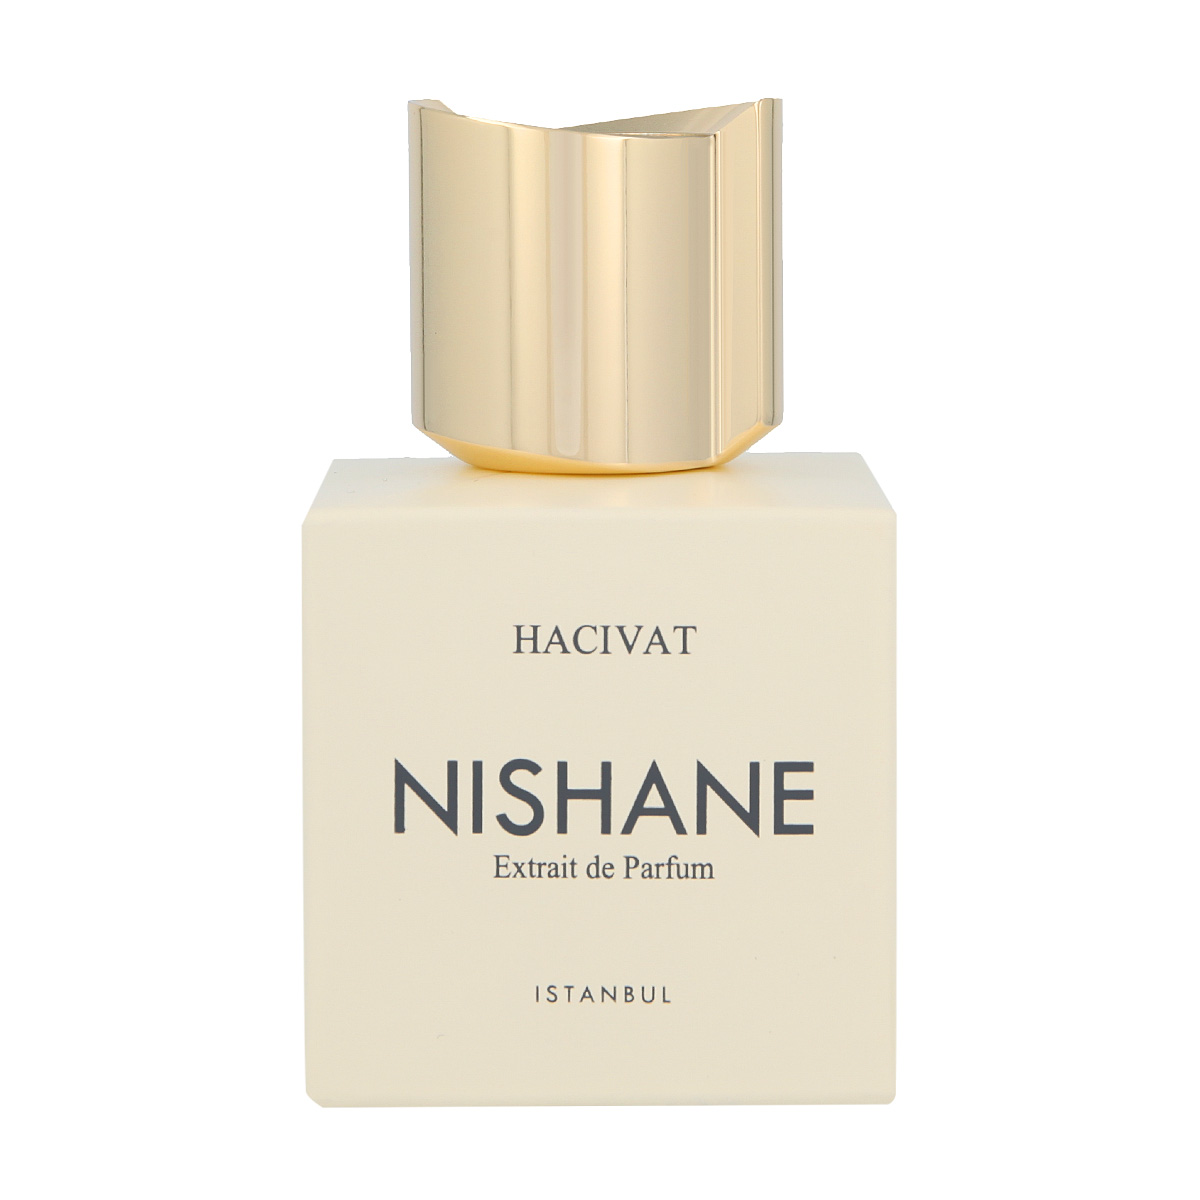 Nishane Hacivat 20 ml NIŠINIAI kvepalų mėginukas (atomaizeris) Unisex Parfum